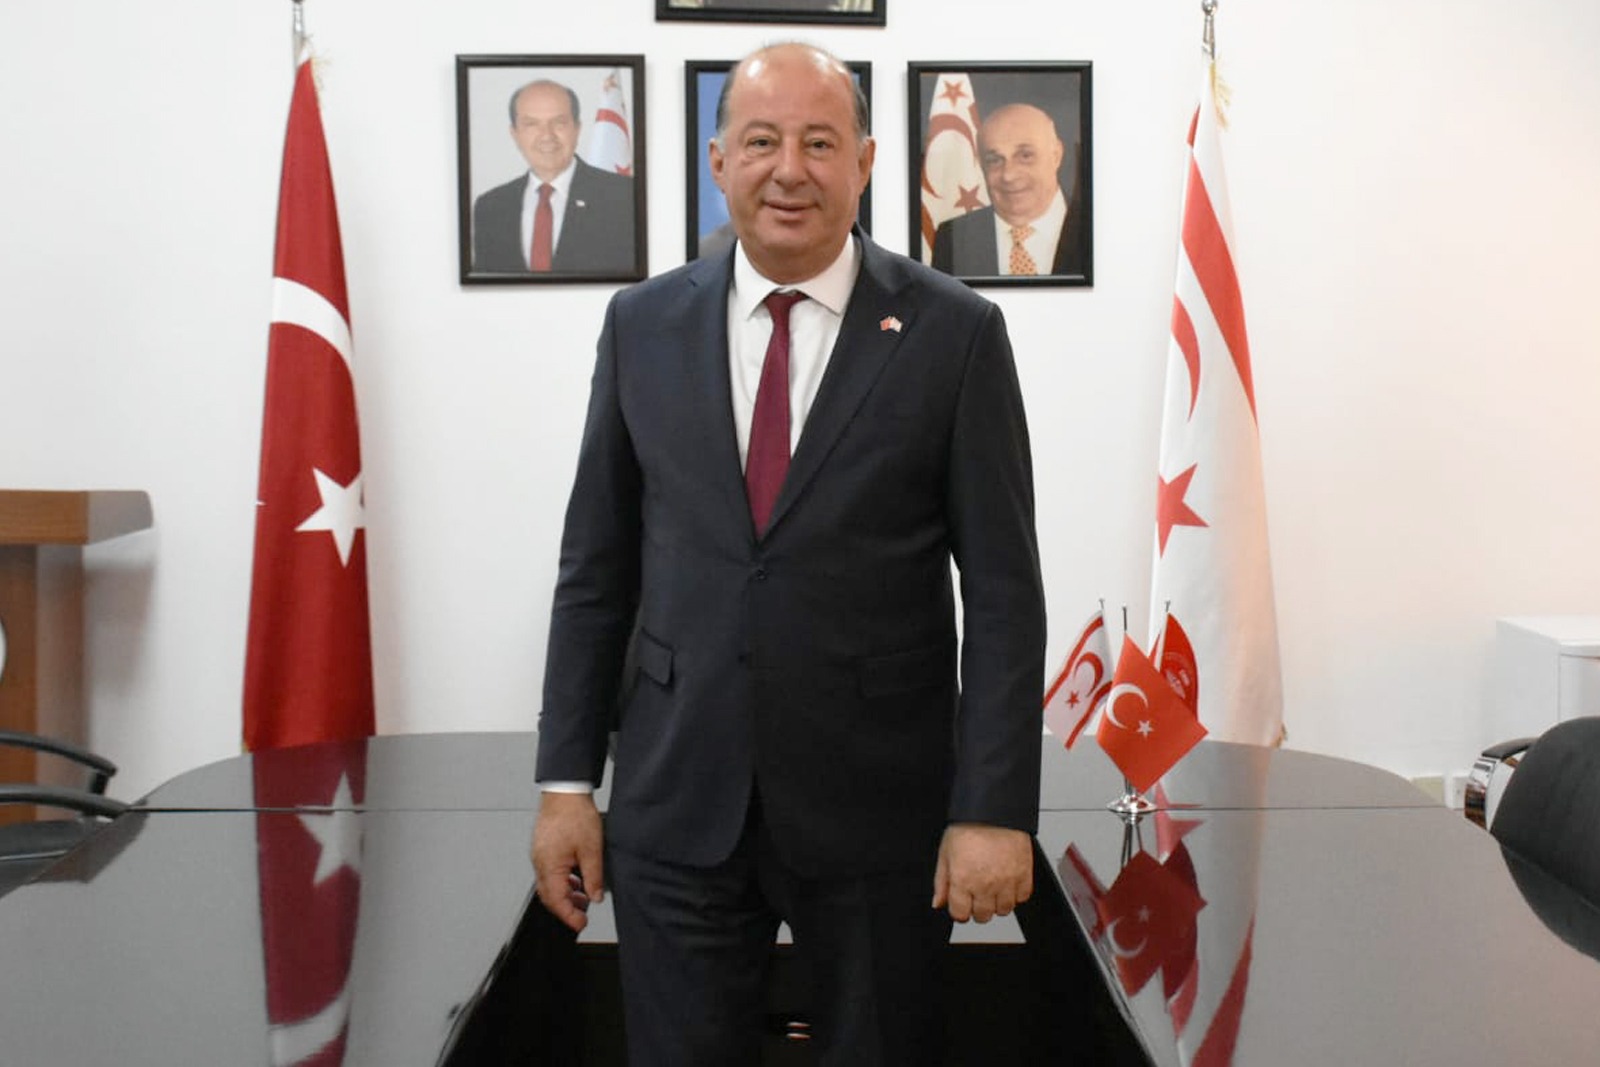 Sağlık Bakanı Hakan Dinçyürek’in 29 Ekim mesajı:  “Cumhuriyet, Türk istiklal mücadelesinin eşsiz bir ürünüdür”